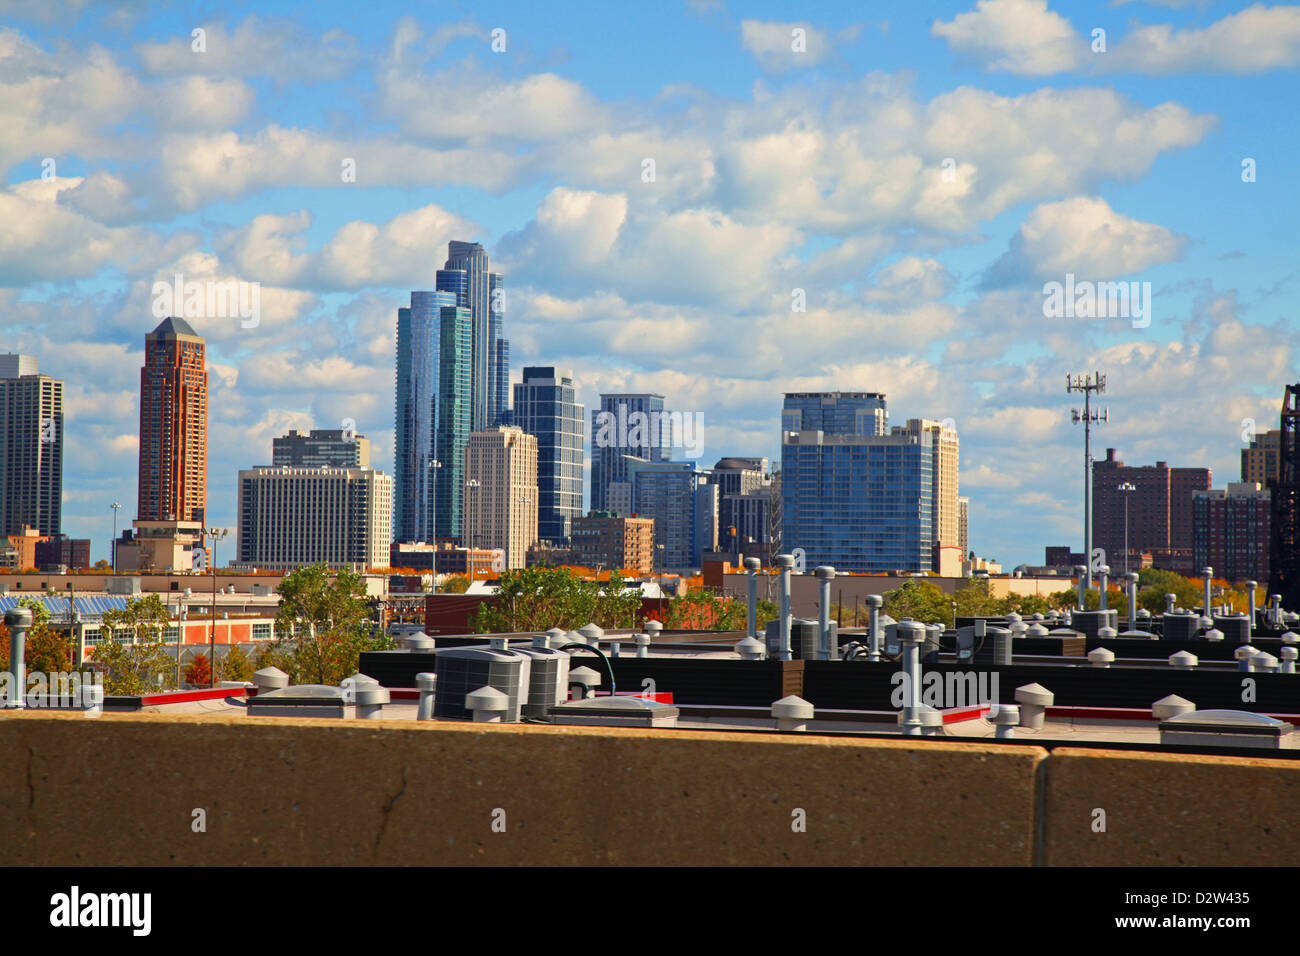 Sullo skyline di Chicago estate nuvole, cielo blu, il centro cittadino di 'Il Loop' quartieri grattacieli, il lago Michigan, industria fabbriche Case Foto Stock